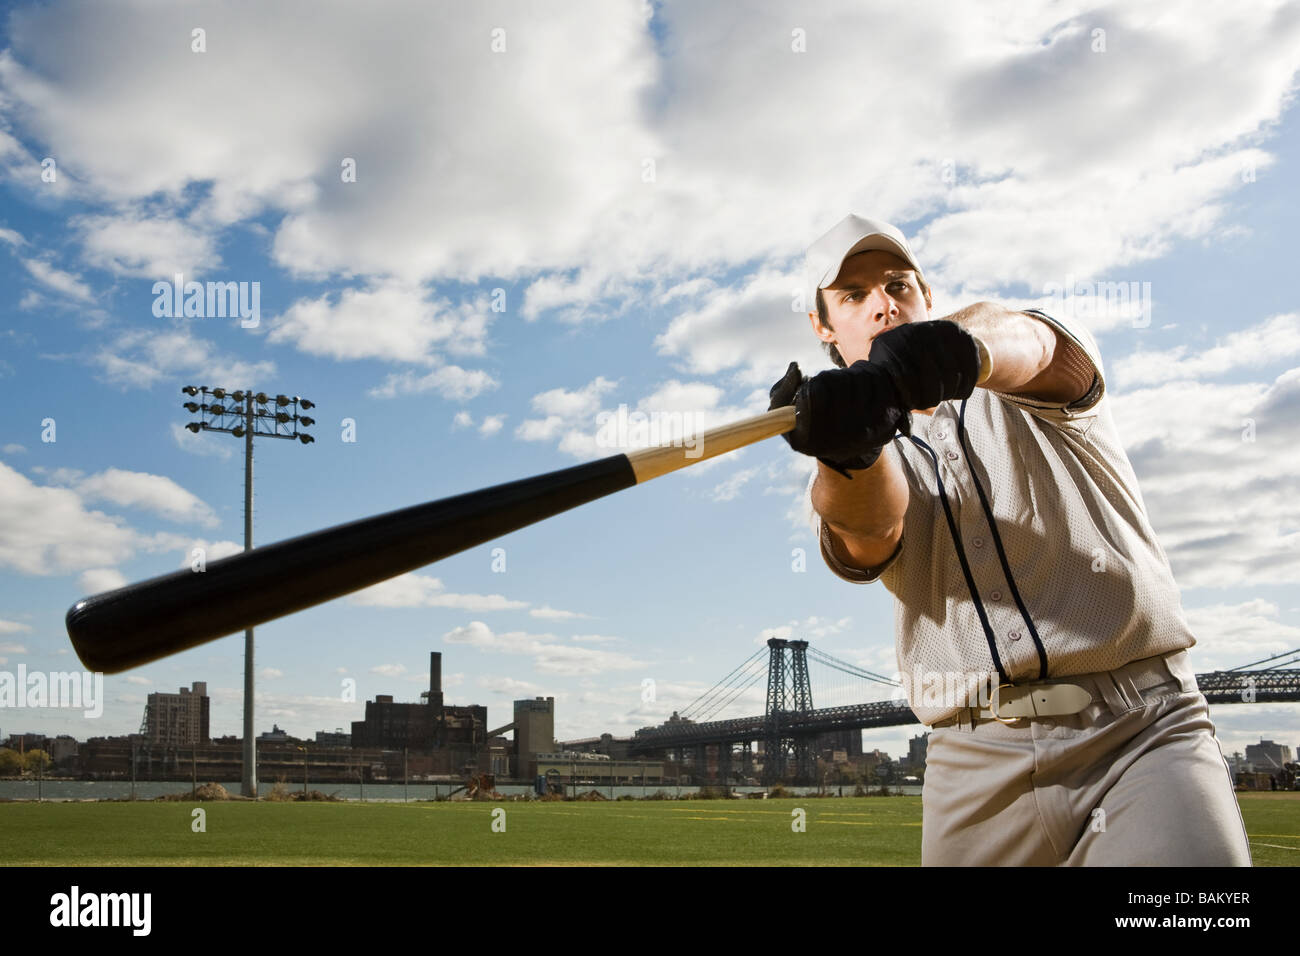 Baseball batter Stock Photo